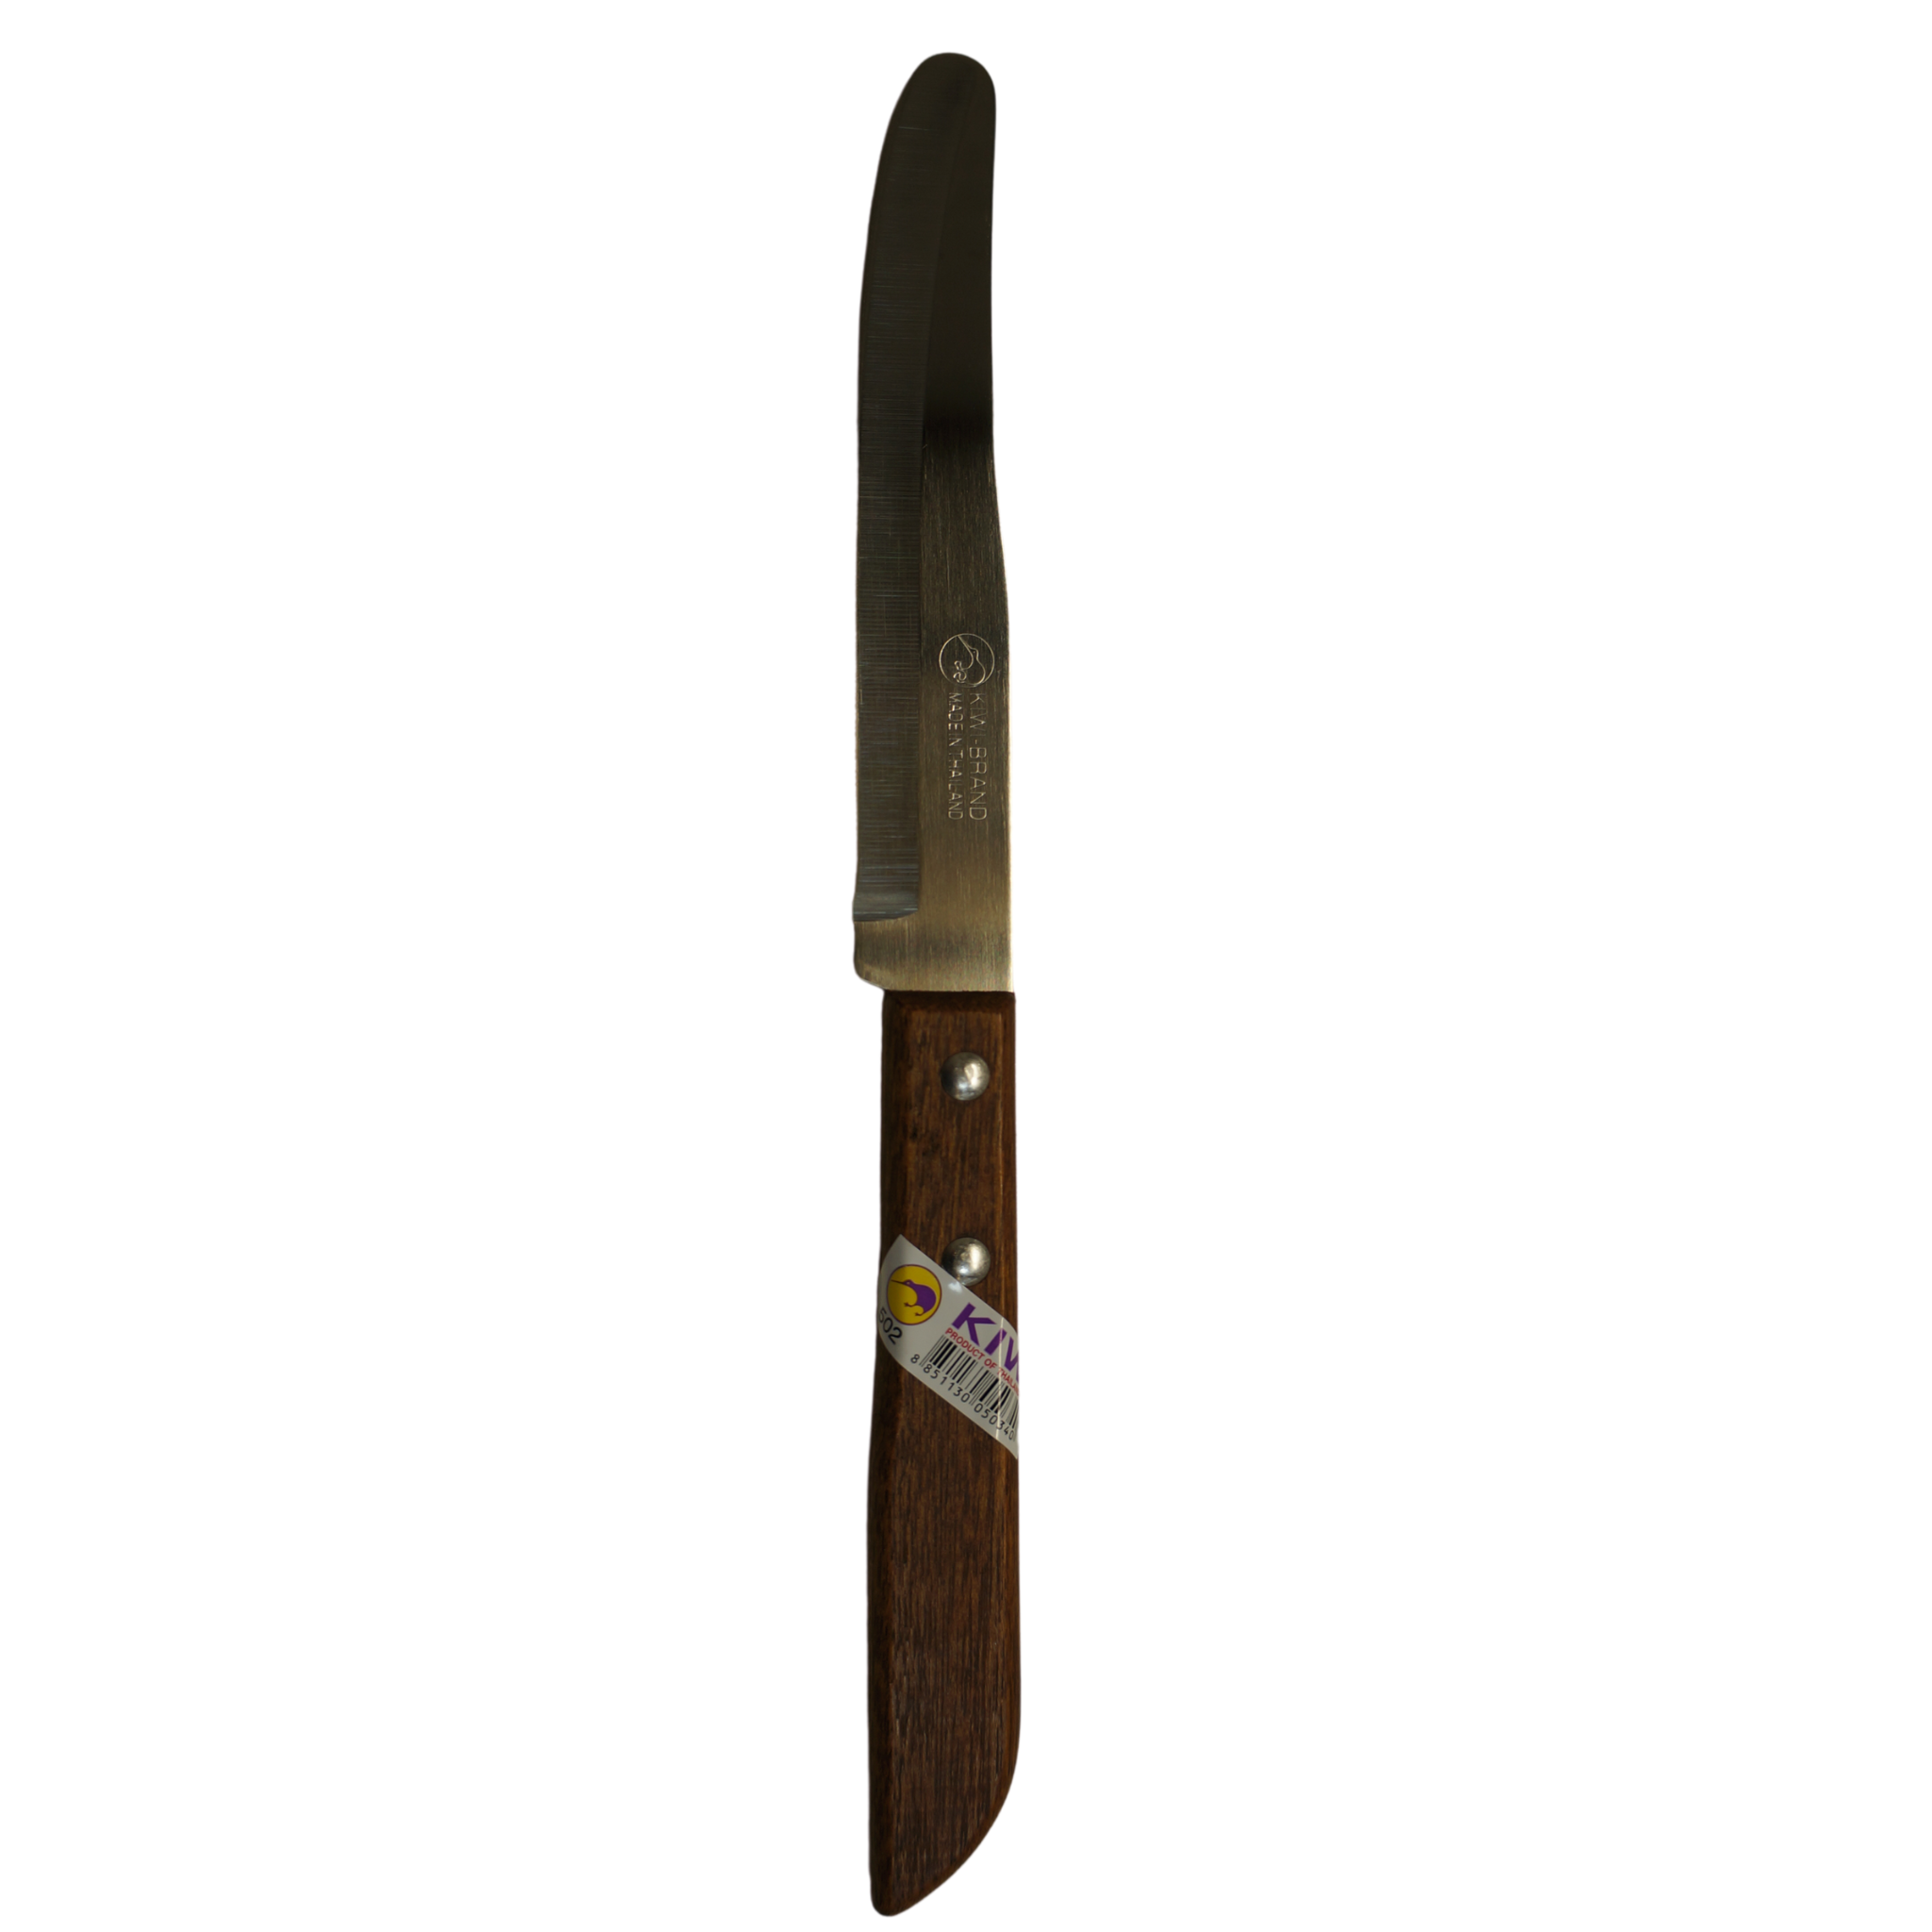 Kiwi Stainless Steel Knives #502 - 6 Pcs per Set